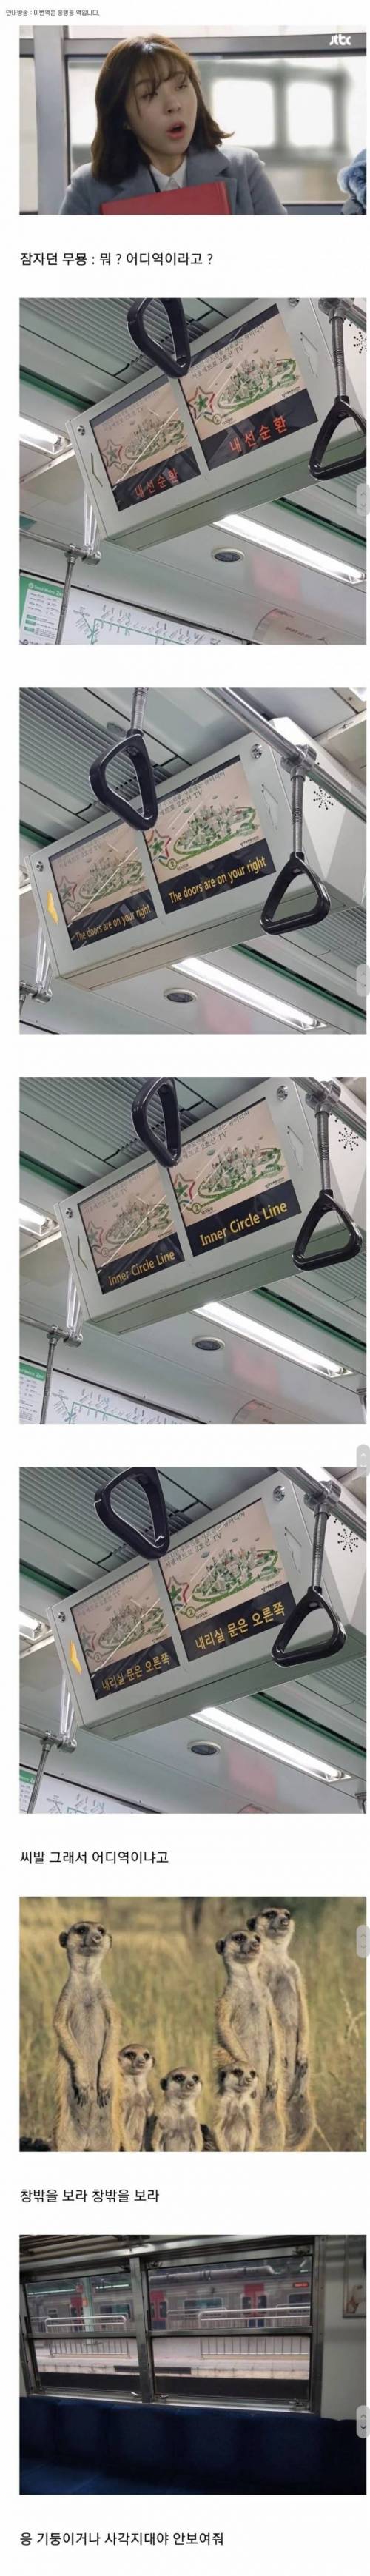 한국 지하철 유일한 단점.jpg